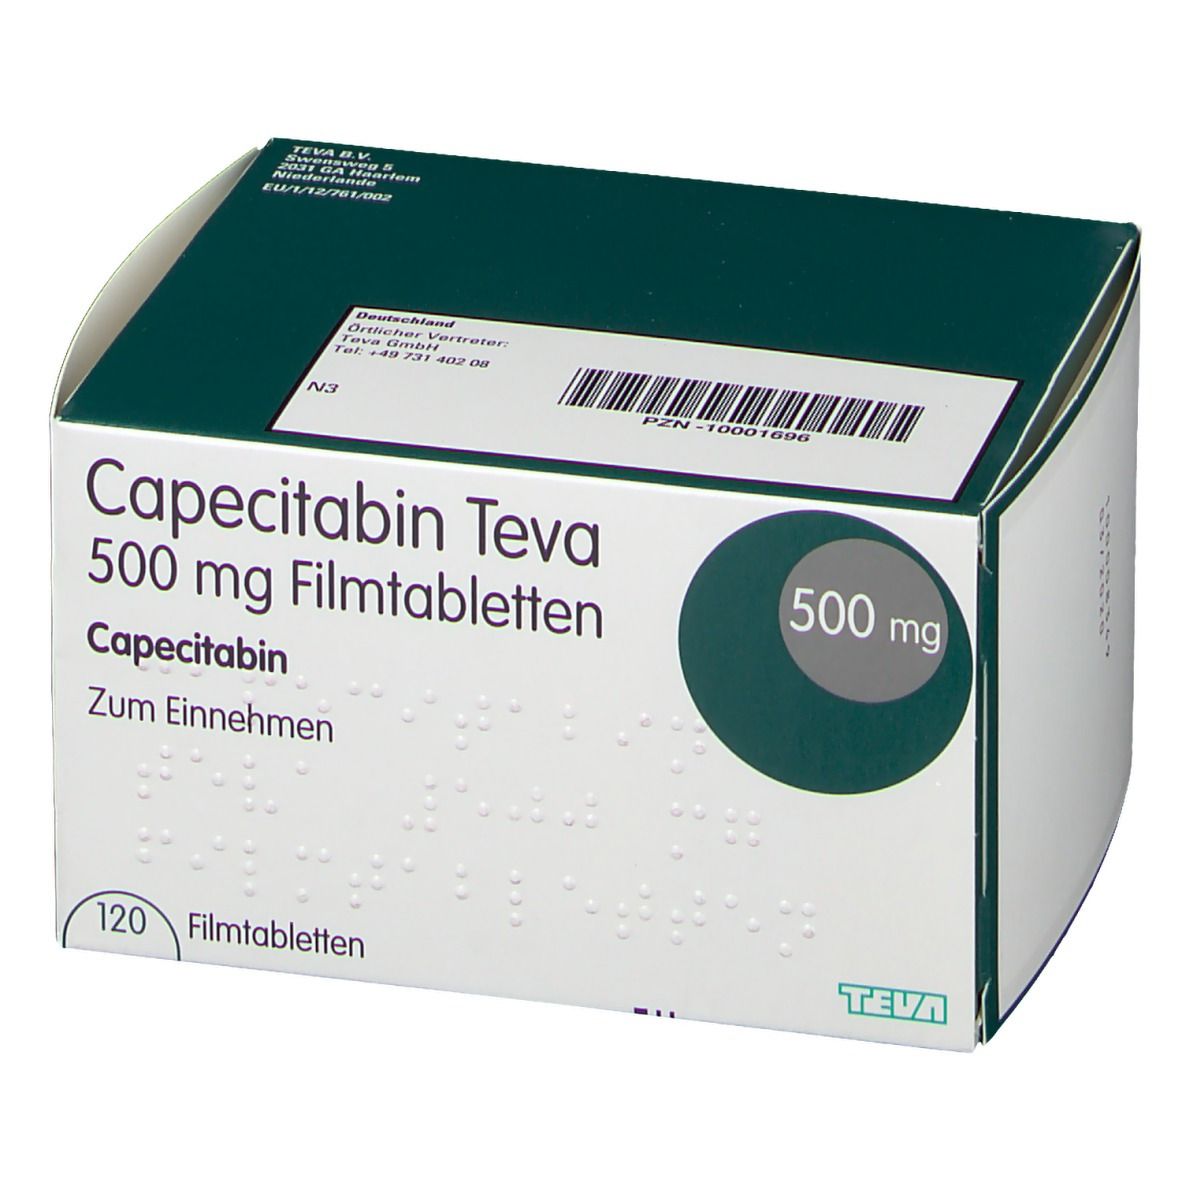 Capecitabin Teva 500 mg